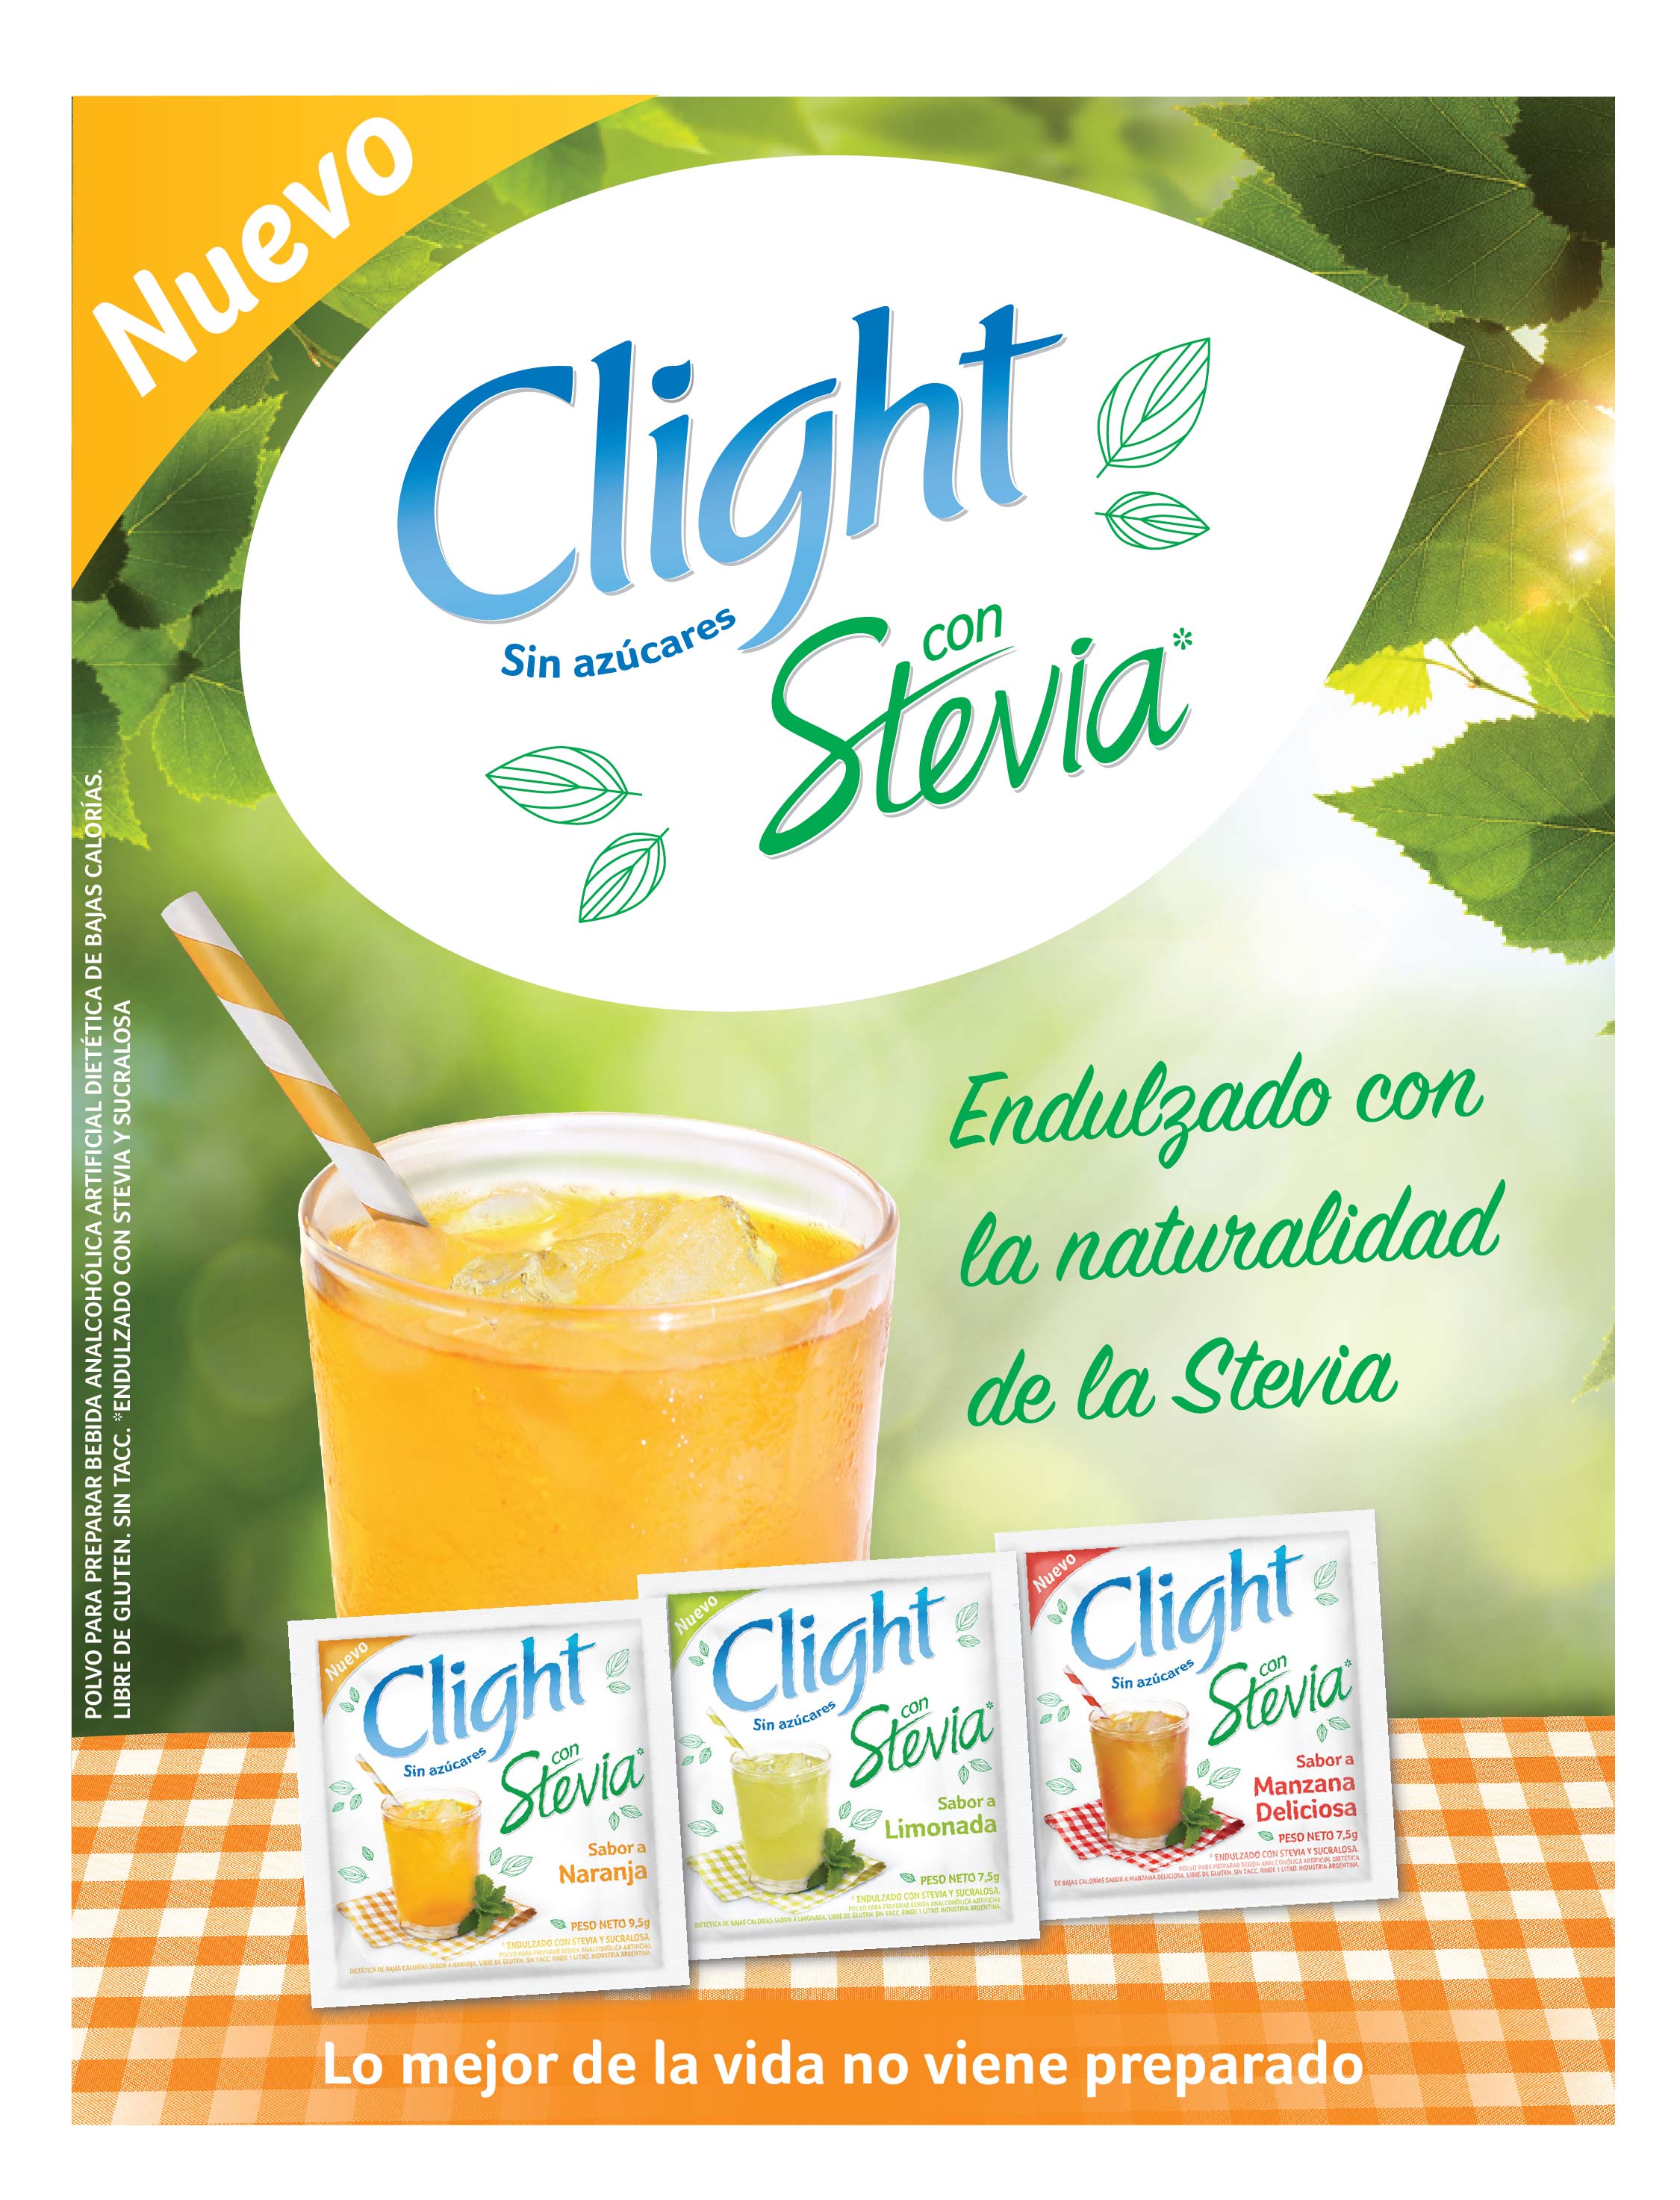 Clight lanzó su nueva edición con stevia